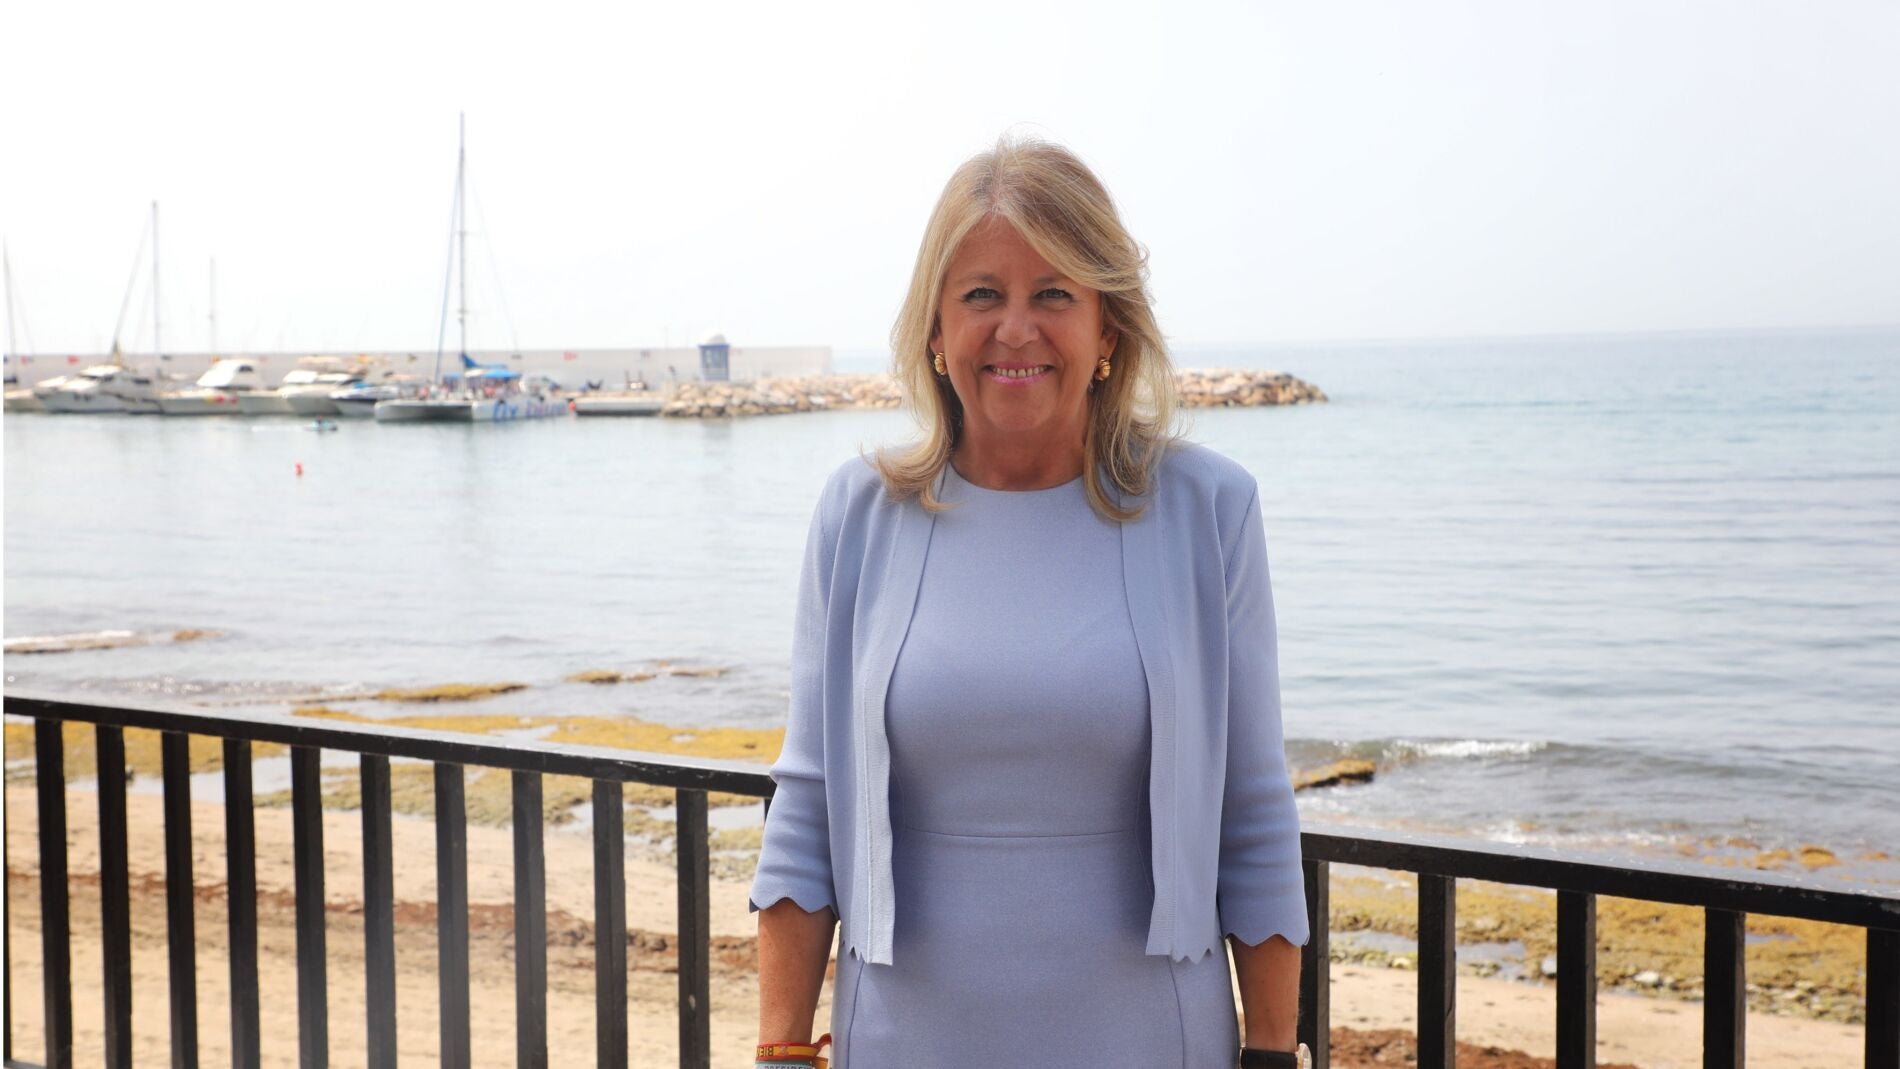 La alcaldesa de Marbella sigue omitiendo irregularidades en su patrimonio al Senado